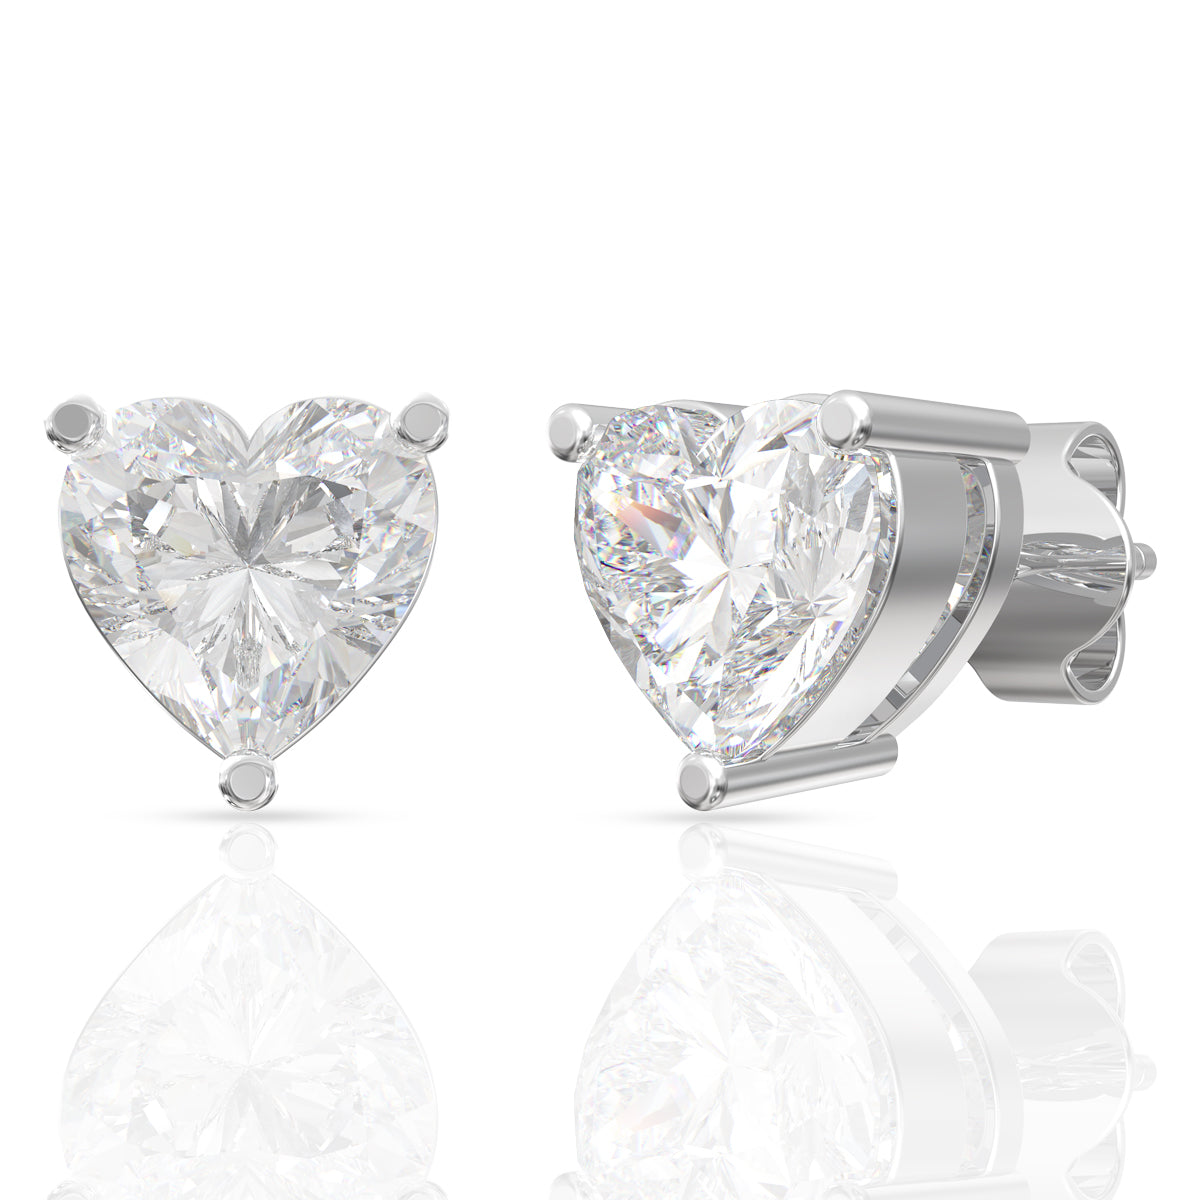 Alluring Diamond Heart Pendant Set